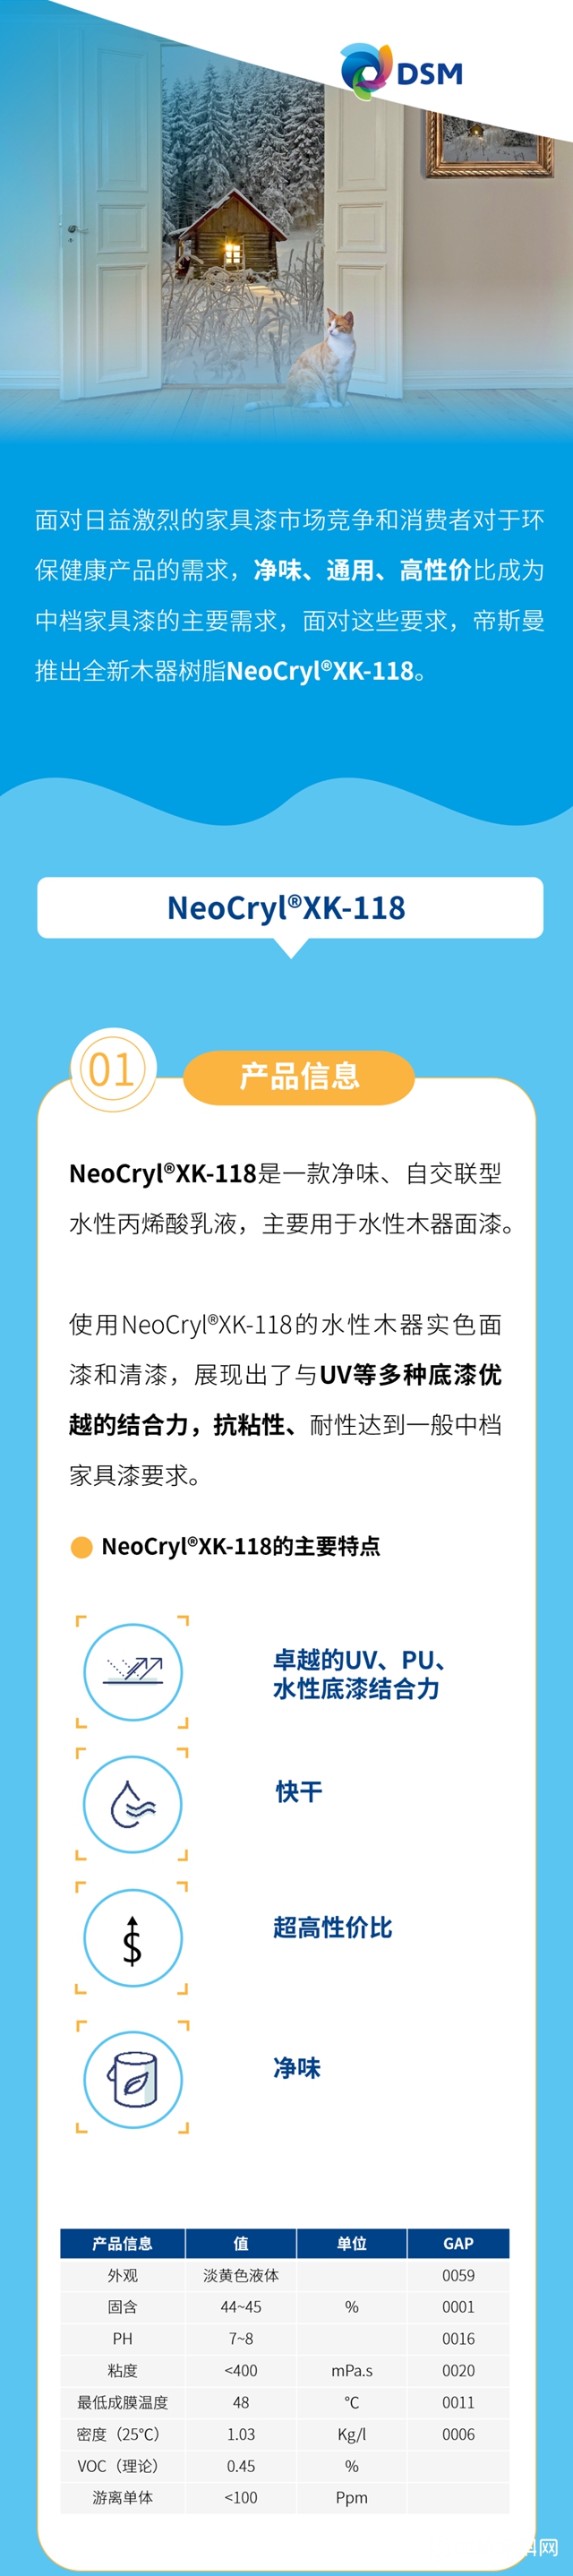 NeoCryl®XK-118，全新净味，通用型水性木器漆树脂上市